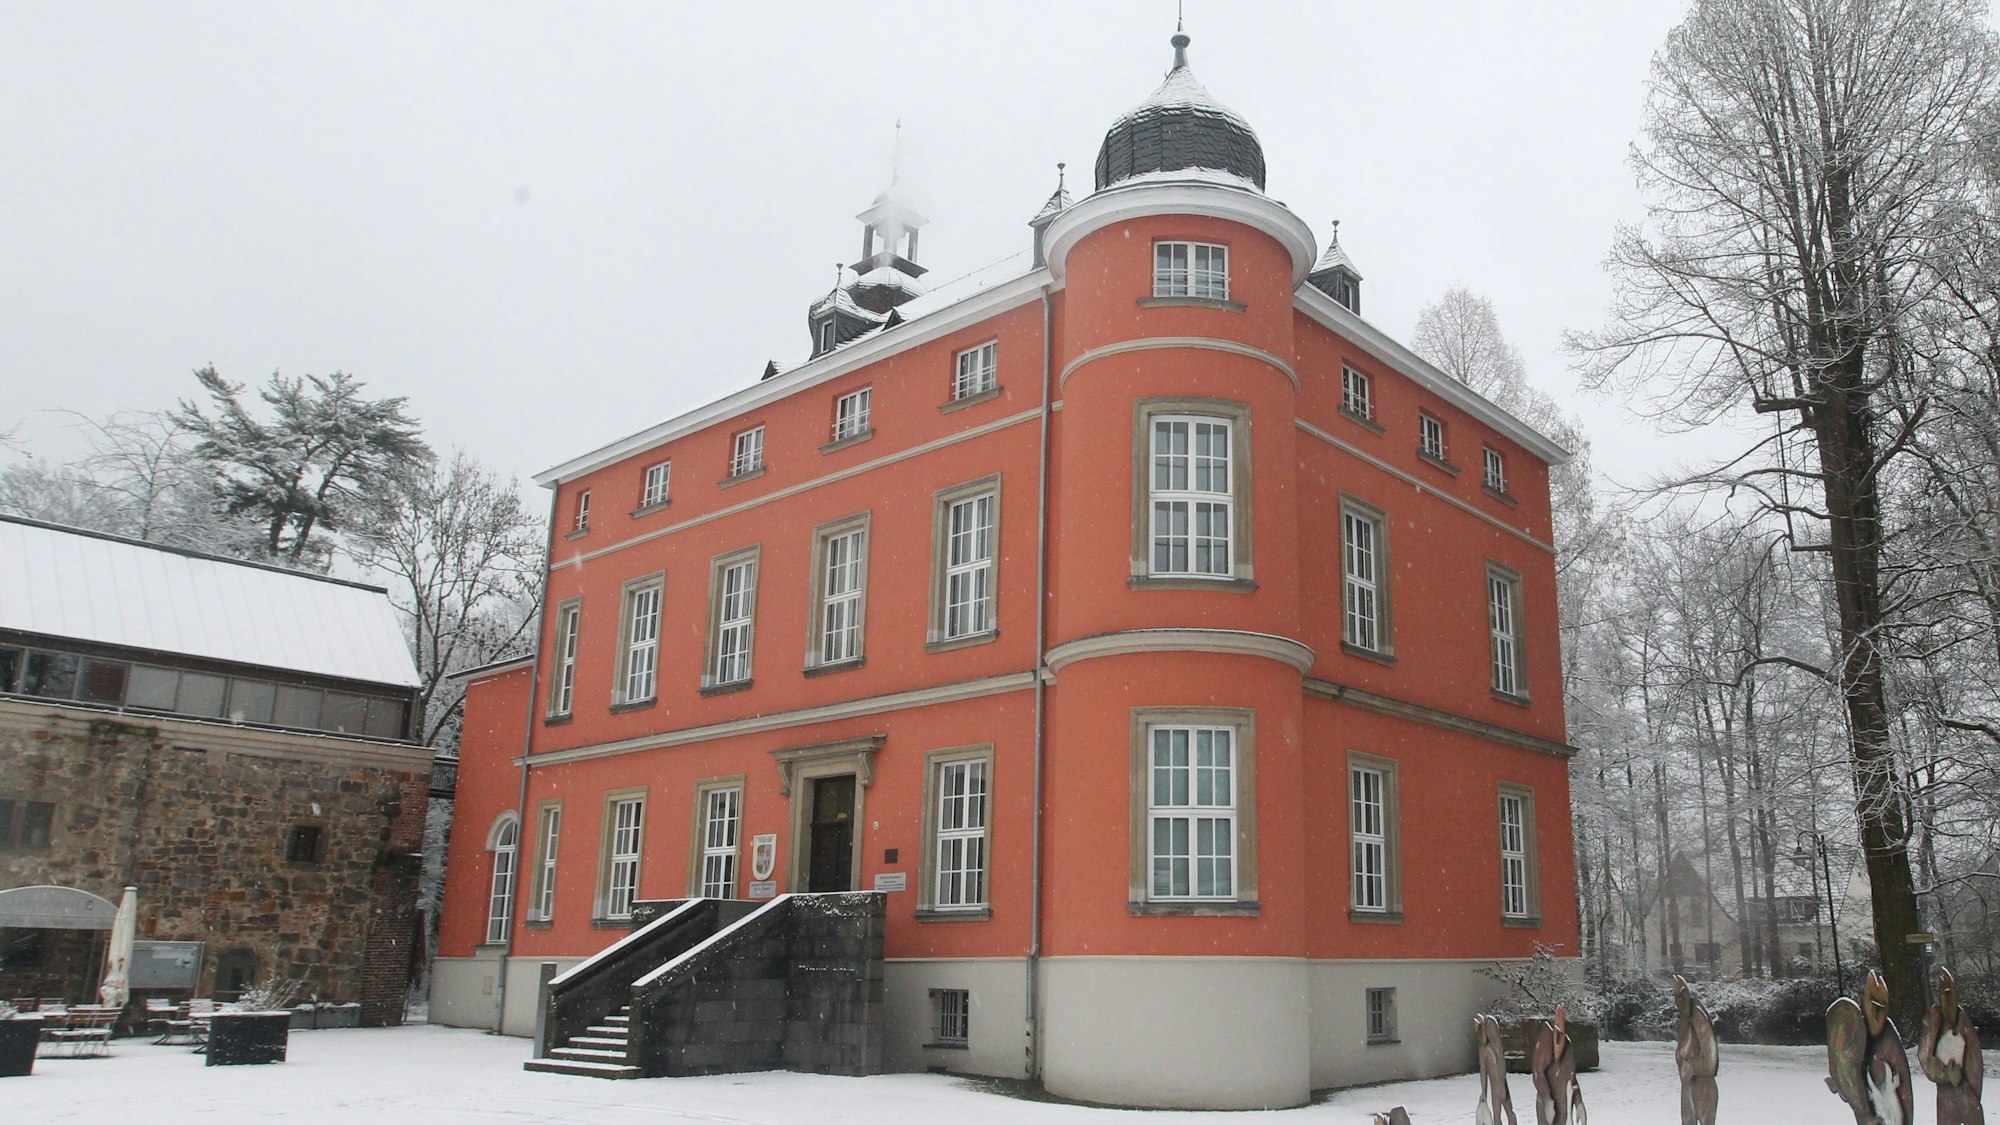 Die schneebedeckte Burg Wissem in Troisdorf